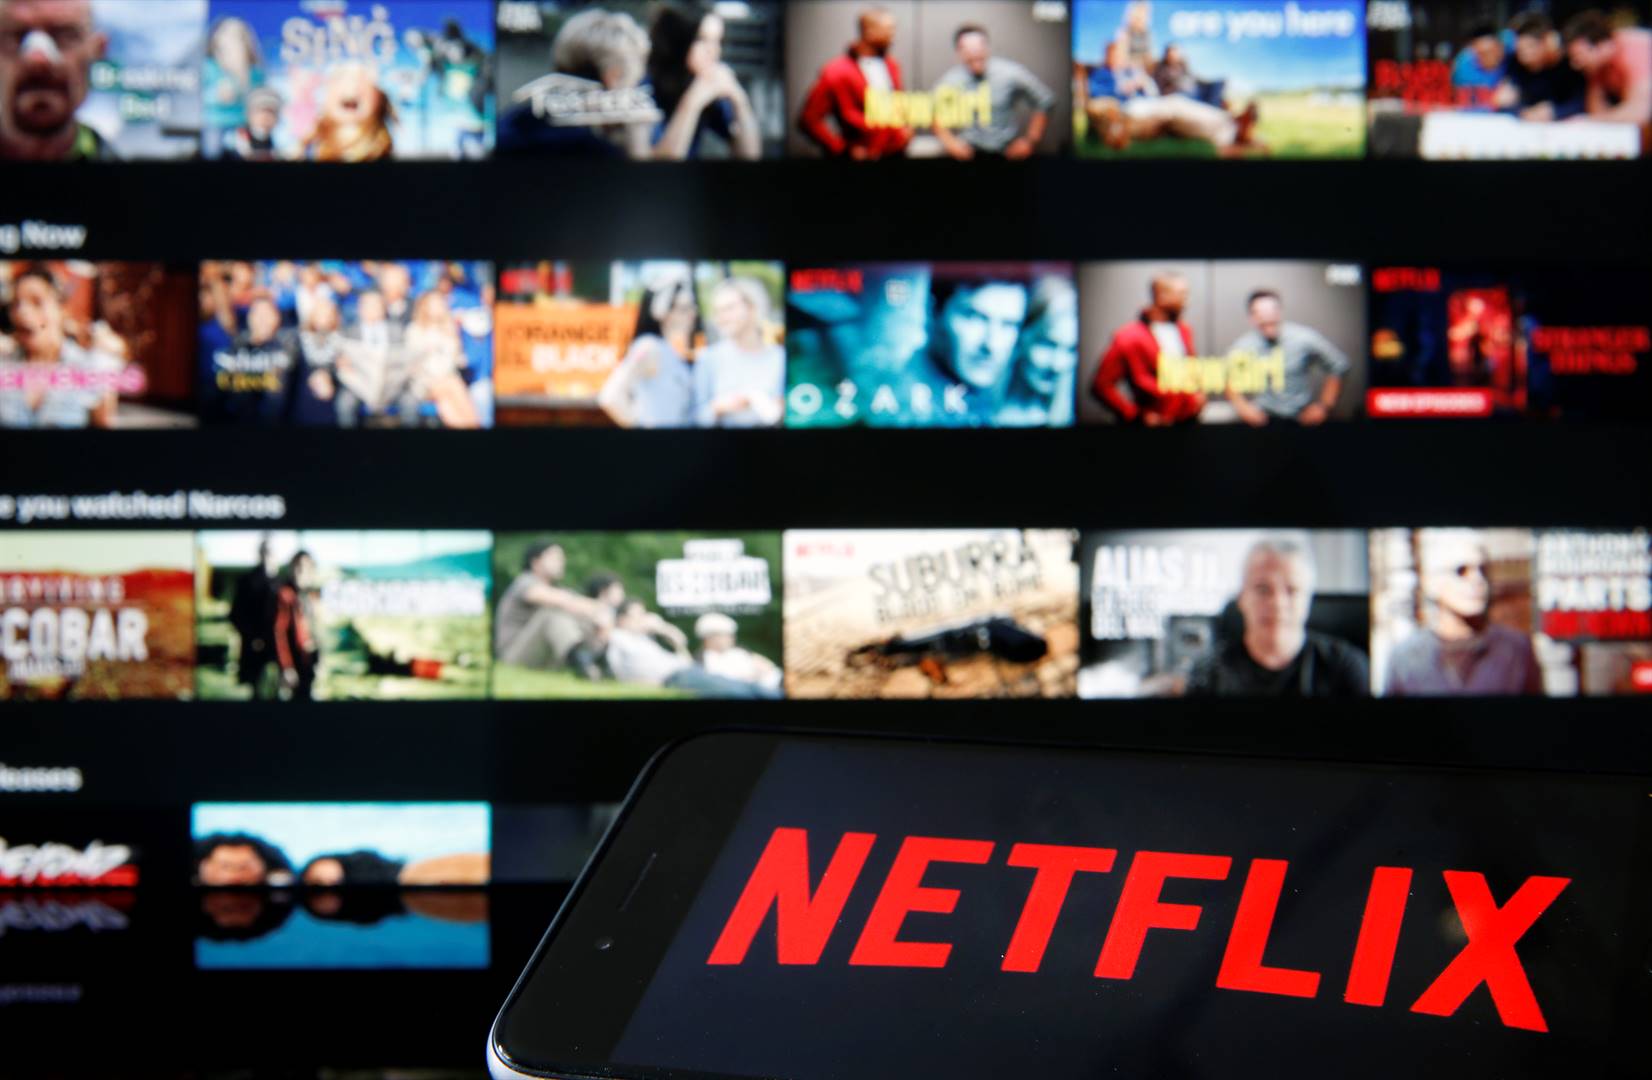 Netflix gaan help om ses rolprente deur Suid-Afrikaanse rolprentmakers te finansier. Foto: Getty Images